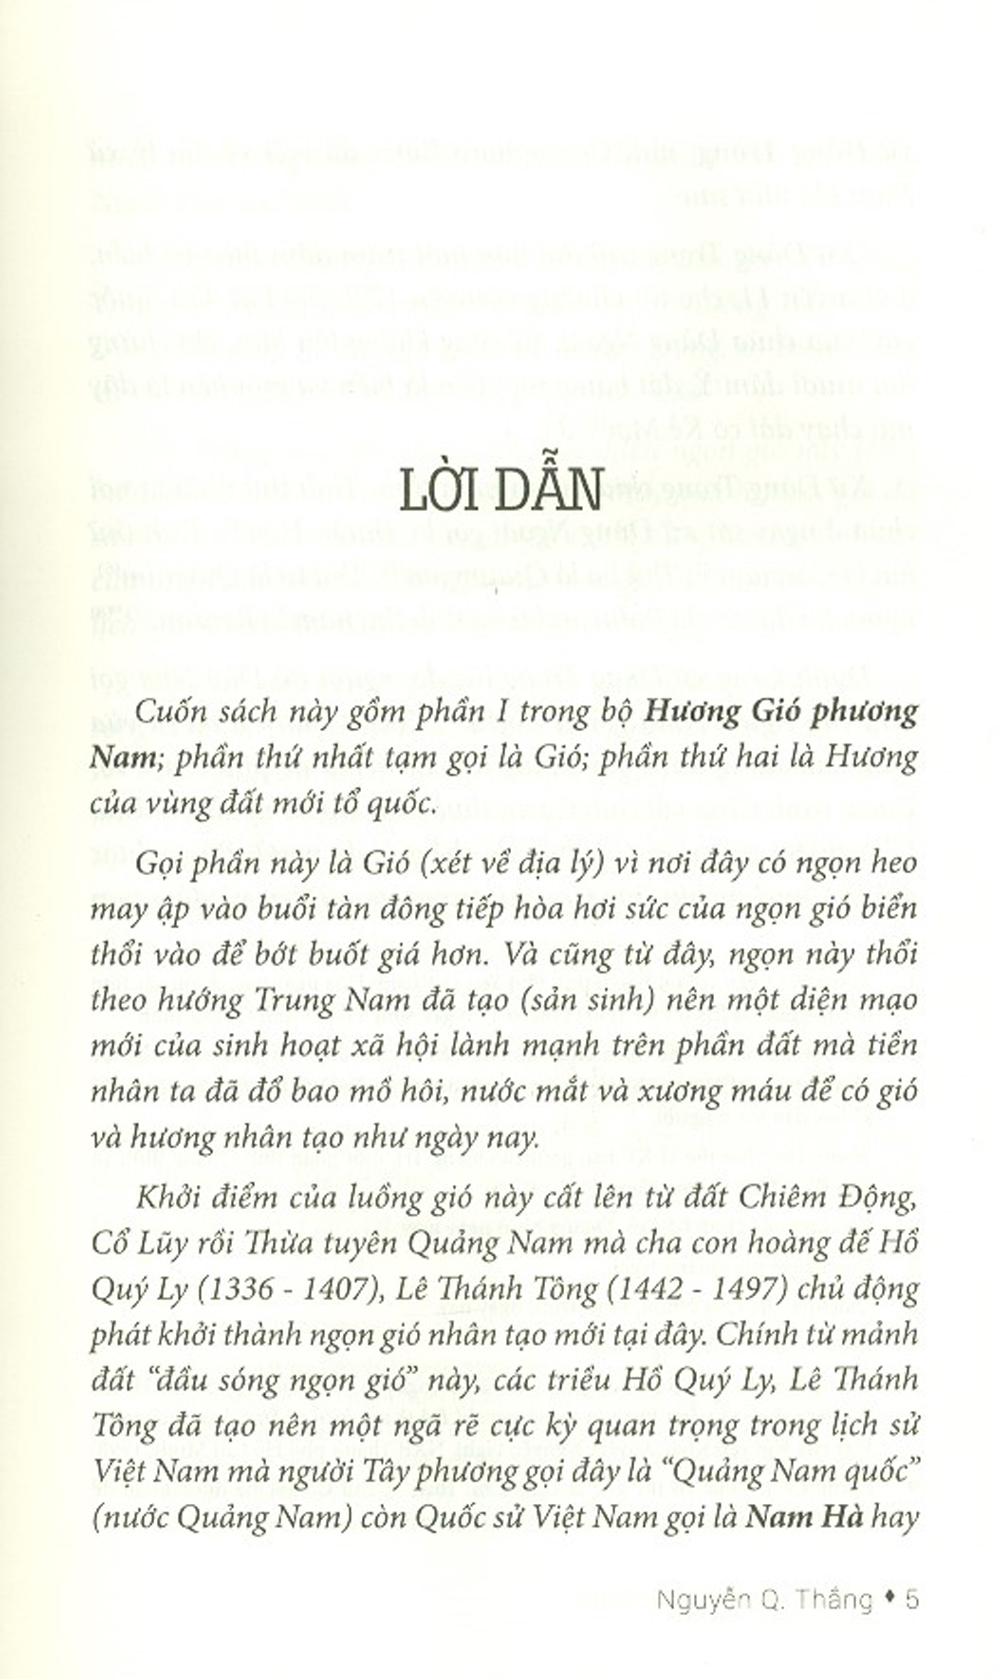 Hương Gió Phương Nam - Tập 1 PDF